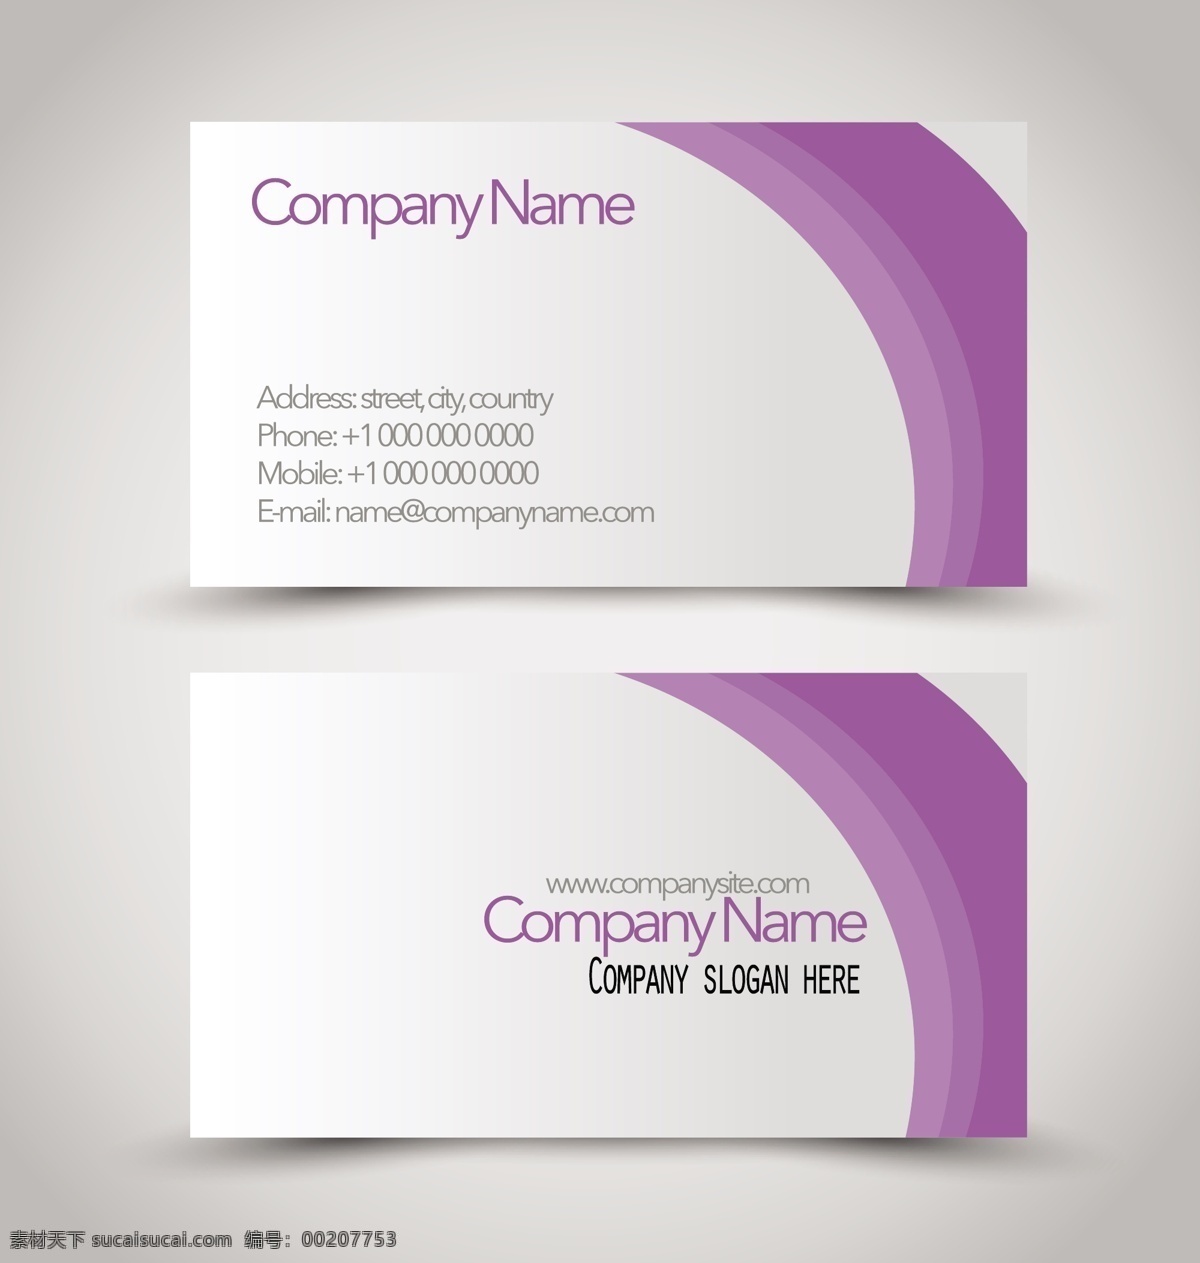 简约 大方 商务 名片 矢量 模版 紫色 卡片 矢量素材 设计素材